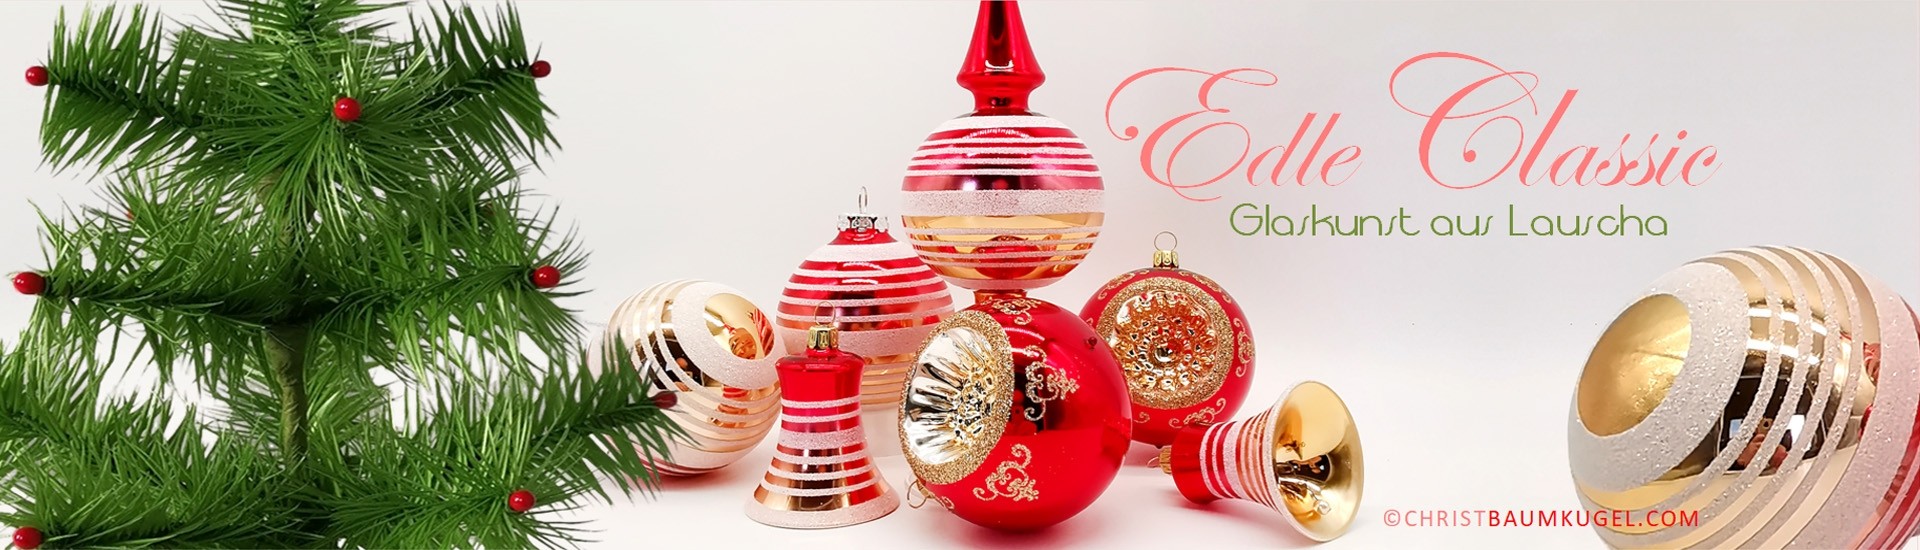 Handgefertigter Glas Christbaumschmuck, Christbaumkugeln, Weihnachtsdeko besondere Weihnachtskugeln und